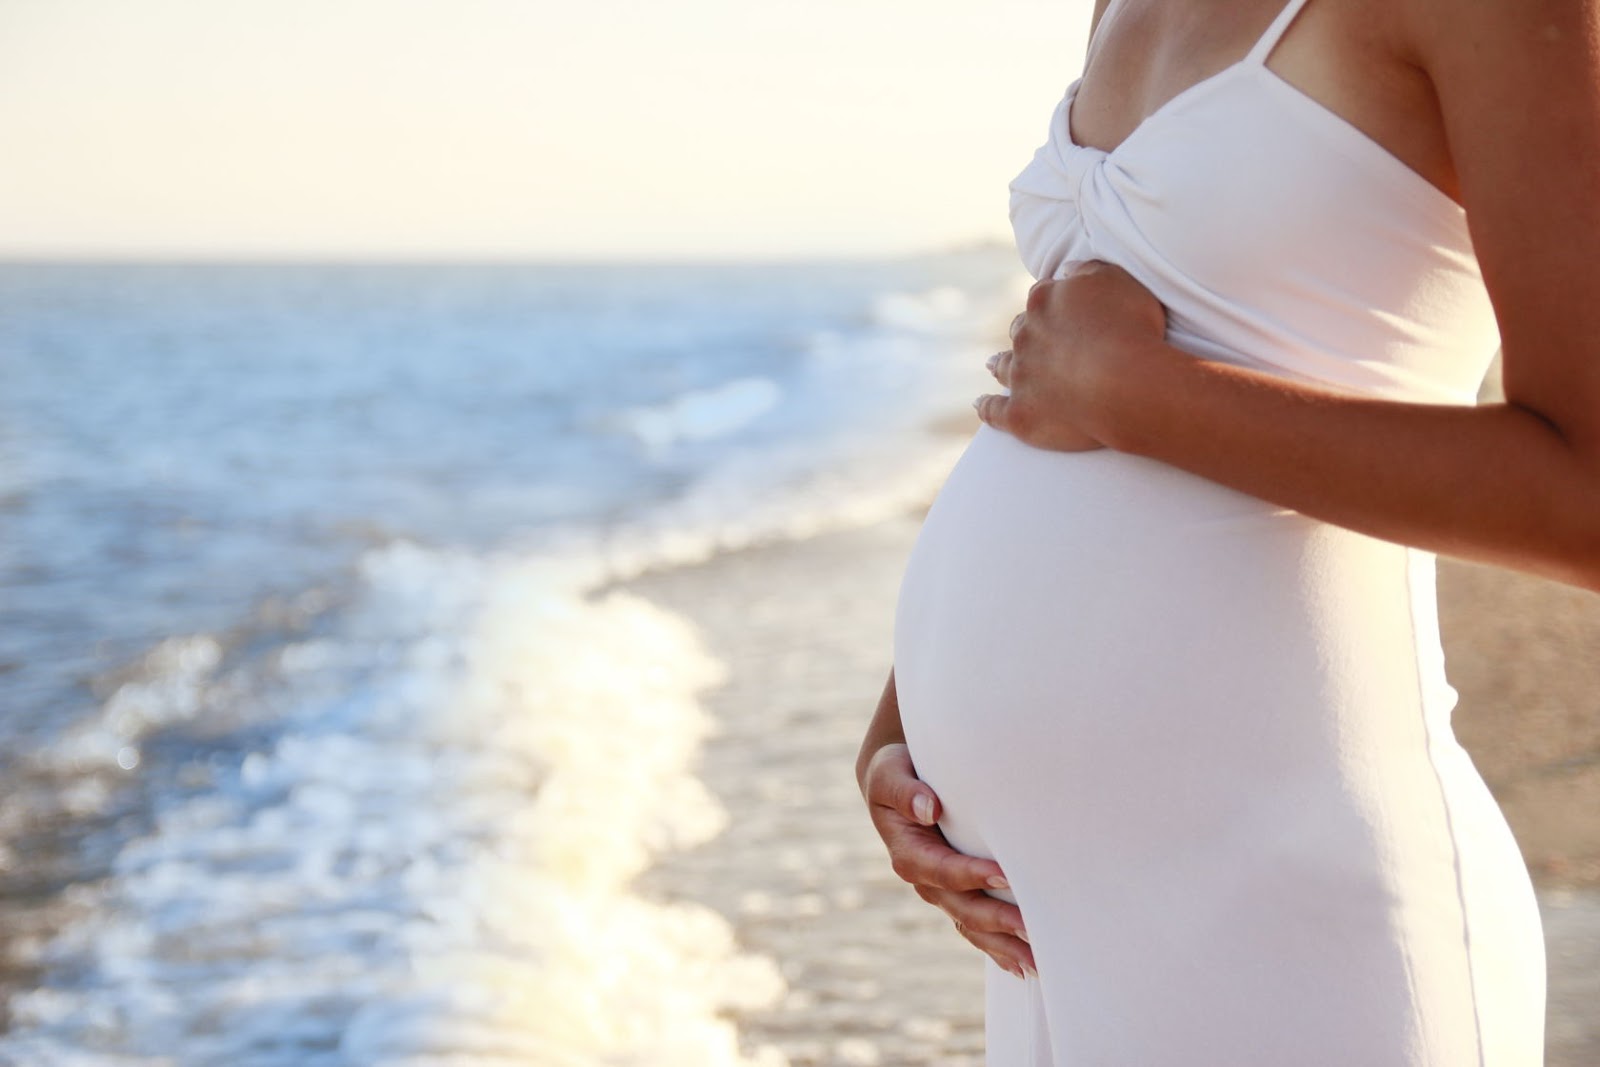 怀孕周期 - 妈妈育儿网